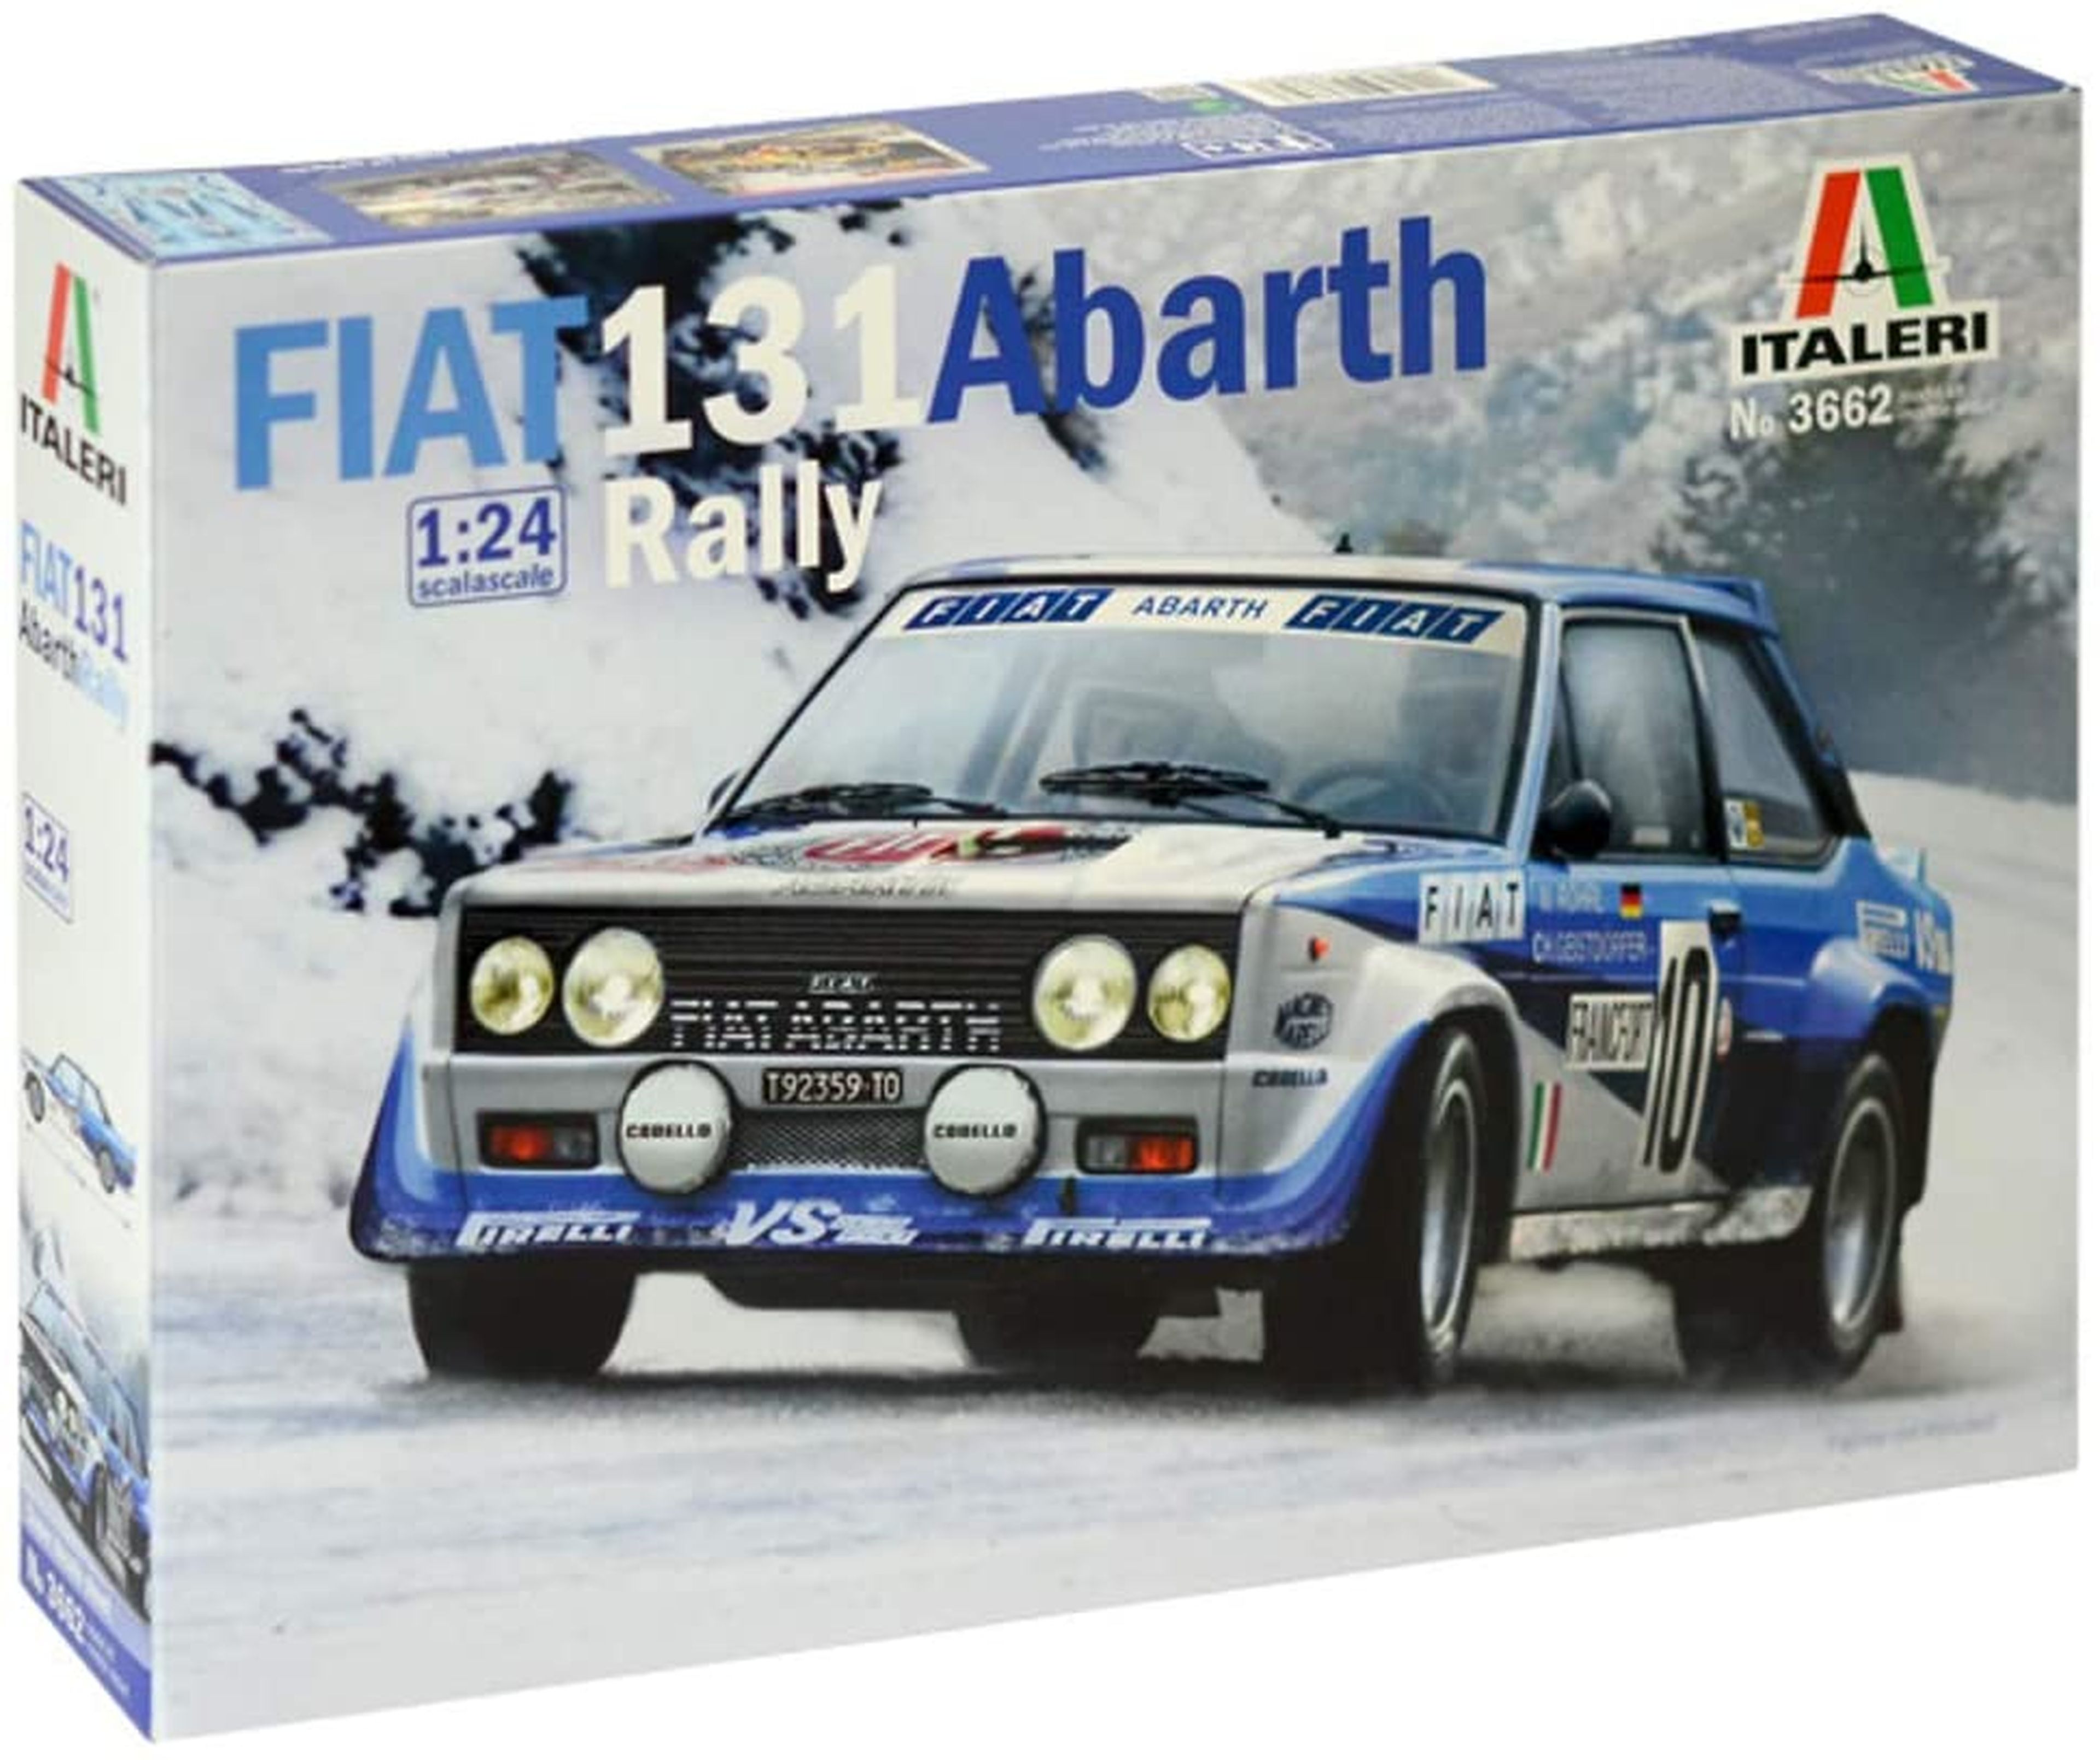 Fiat 131 Abarth Rally maqueta juguete